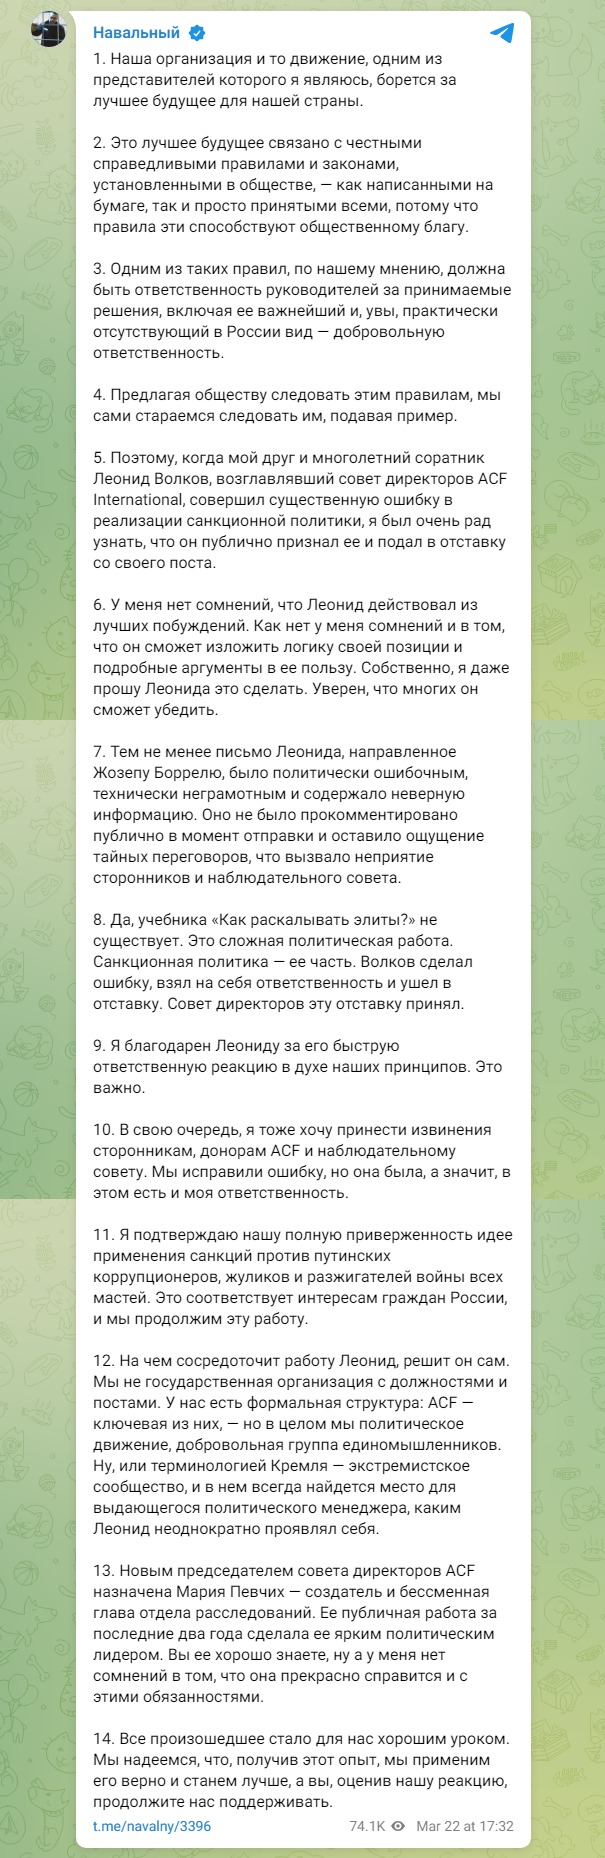 Скріншот із телеграм Навальний